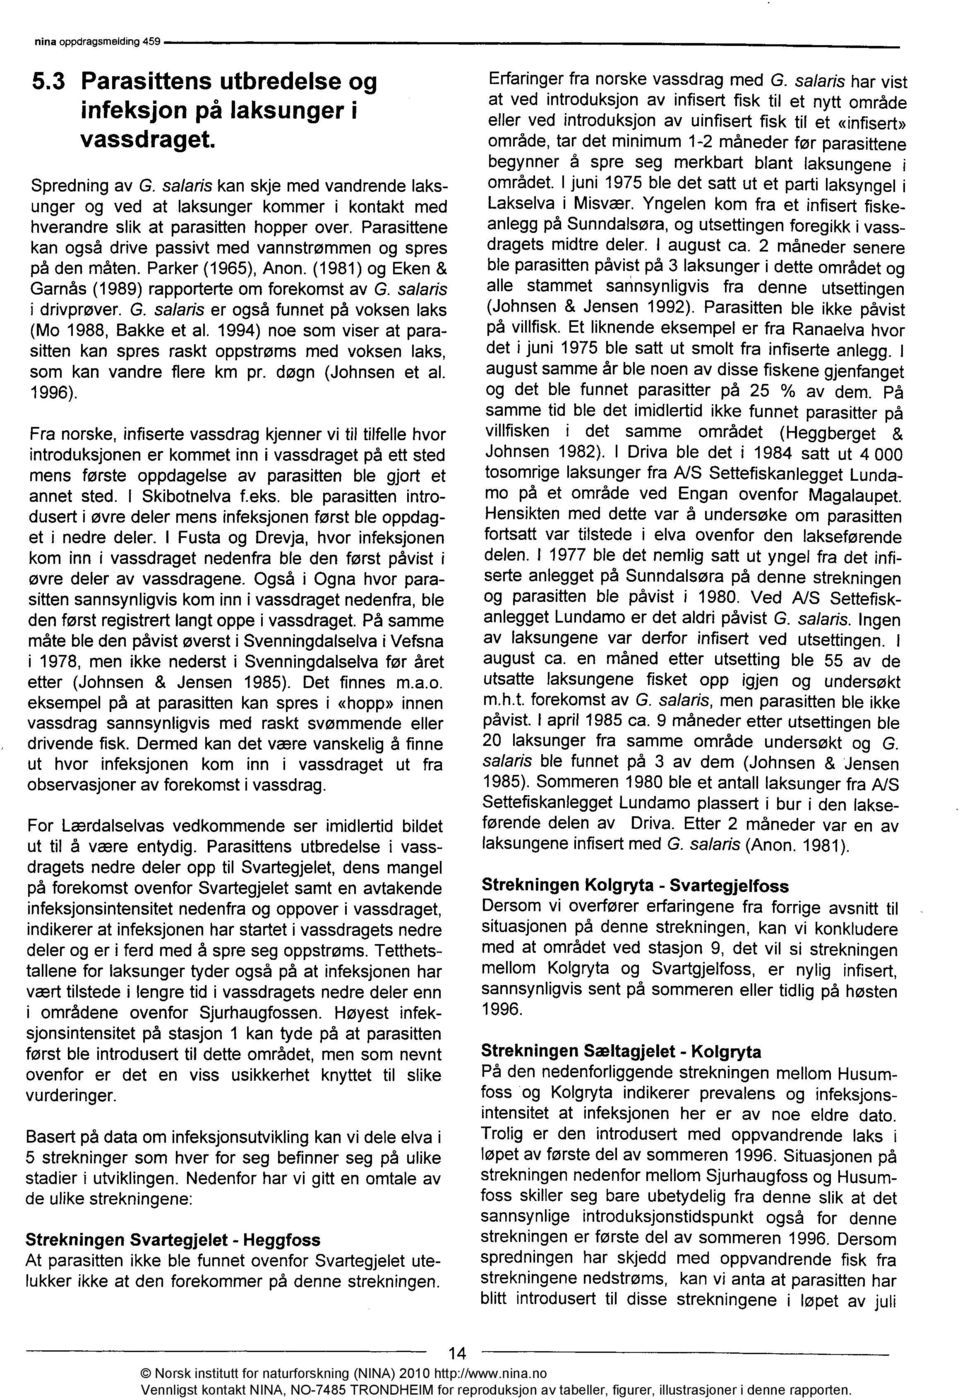 Parker (1965), Anon. (1981) og Eken & Garnås (1989) rapporterte om forekomst av G. salaris i drivprøver. G. salaris er også funnet på voksen laks (Mo 1988, Bakke et al.